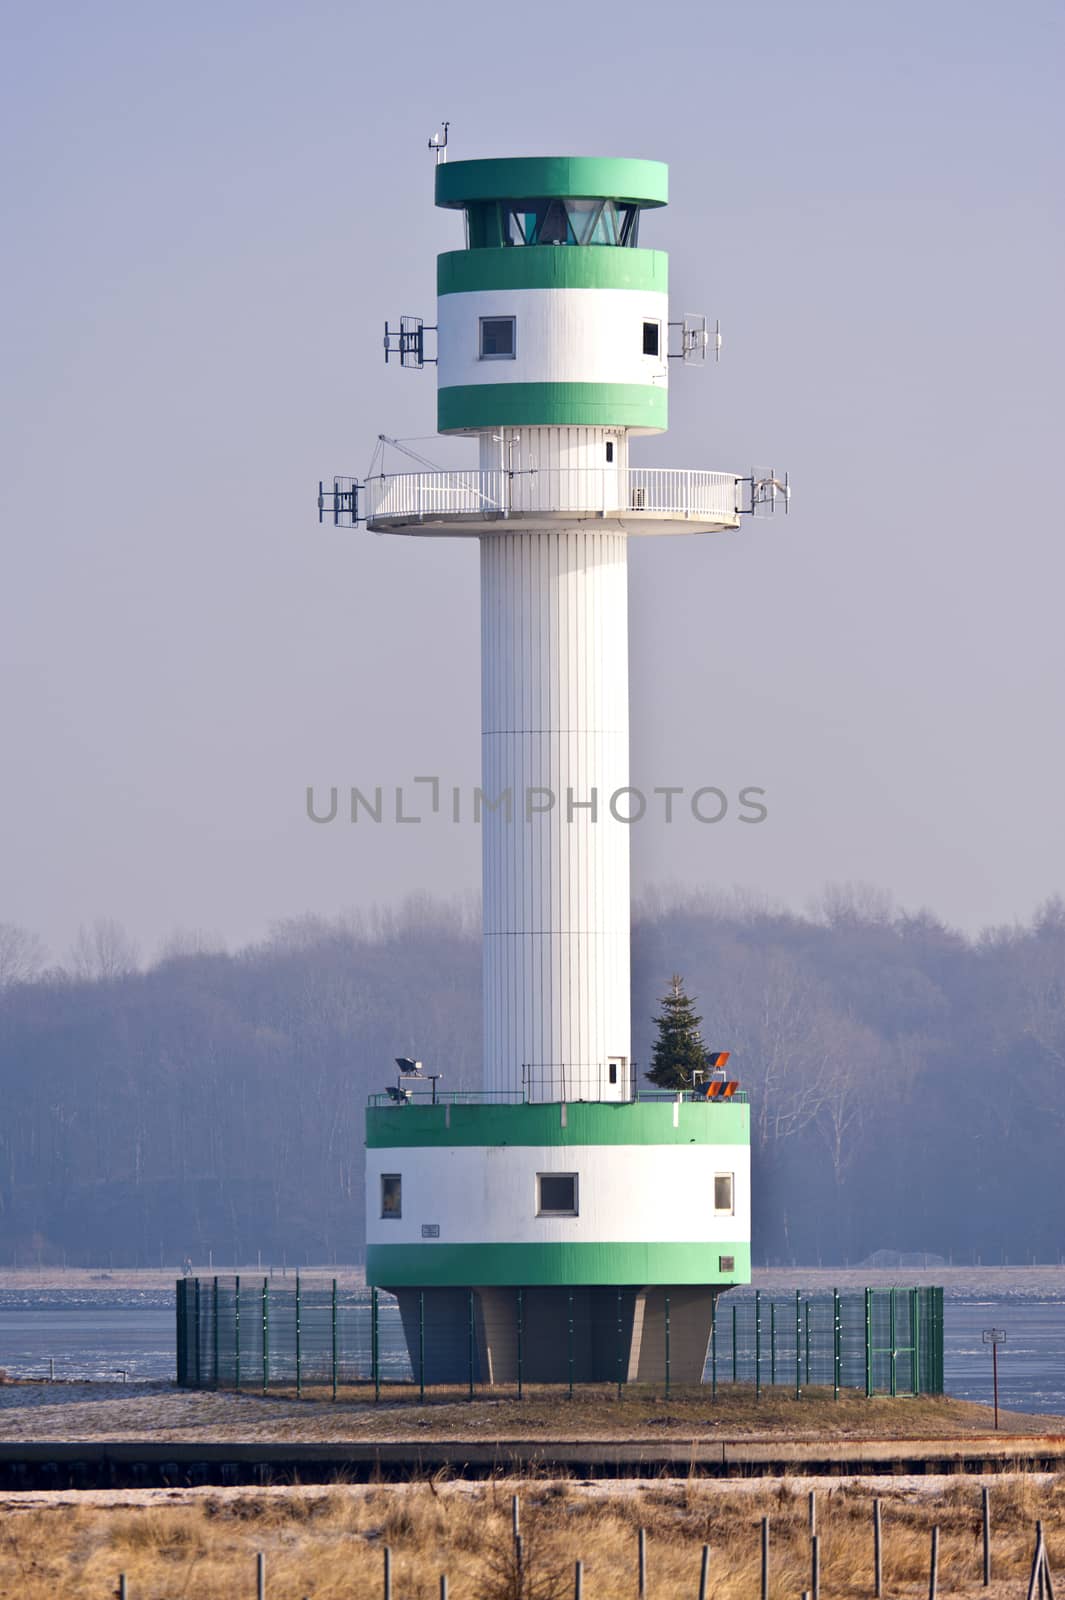 Lighthouse of Kiel in Germany